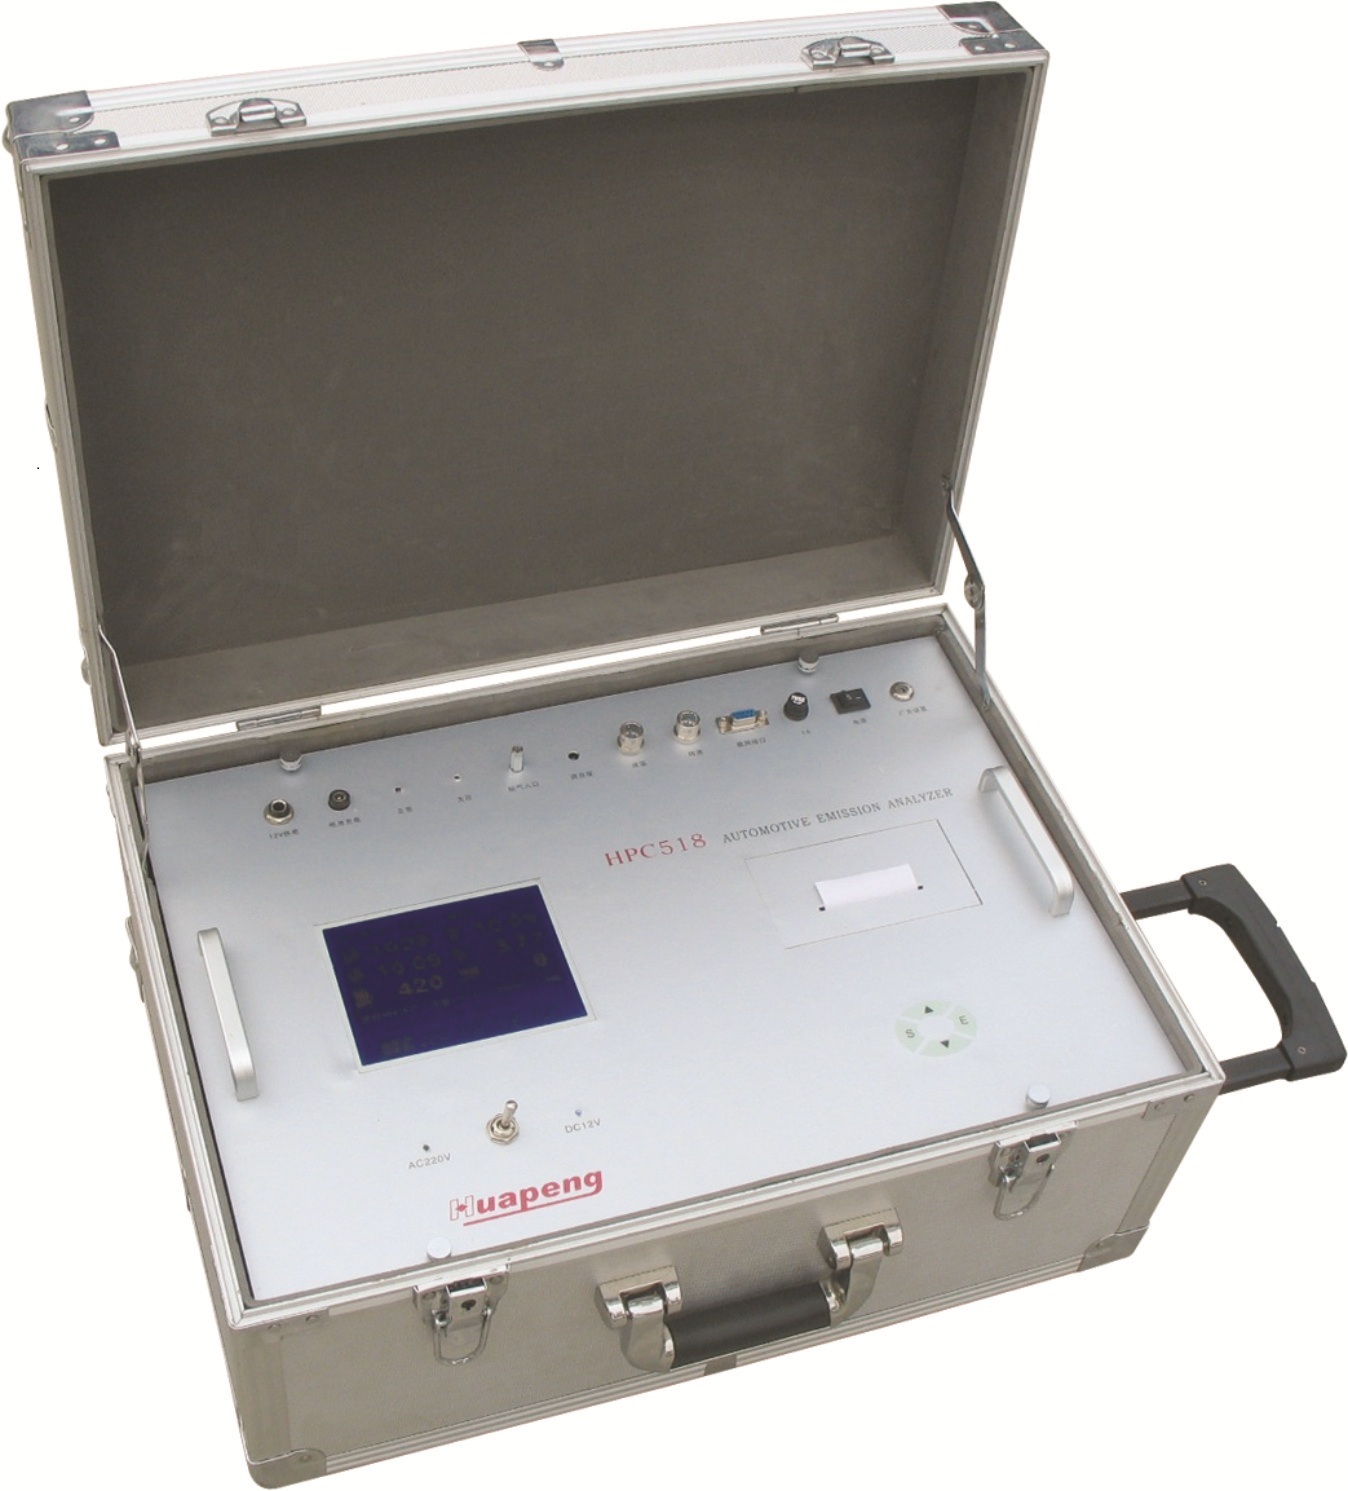 鲁拓现货供应迷你型高灵敏度LT-RG1000型放射性个人剂量报警仪